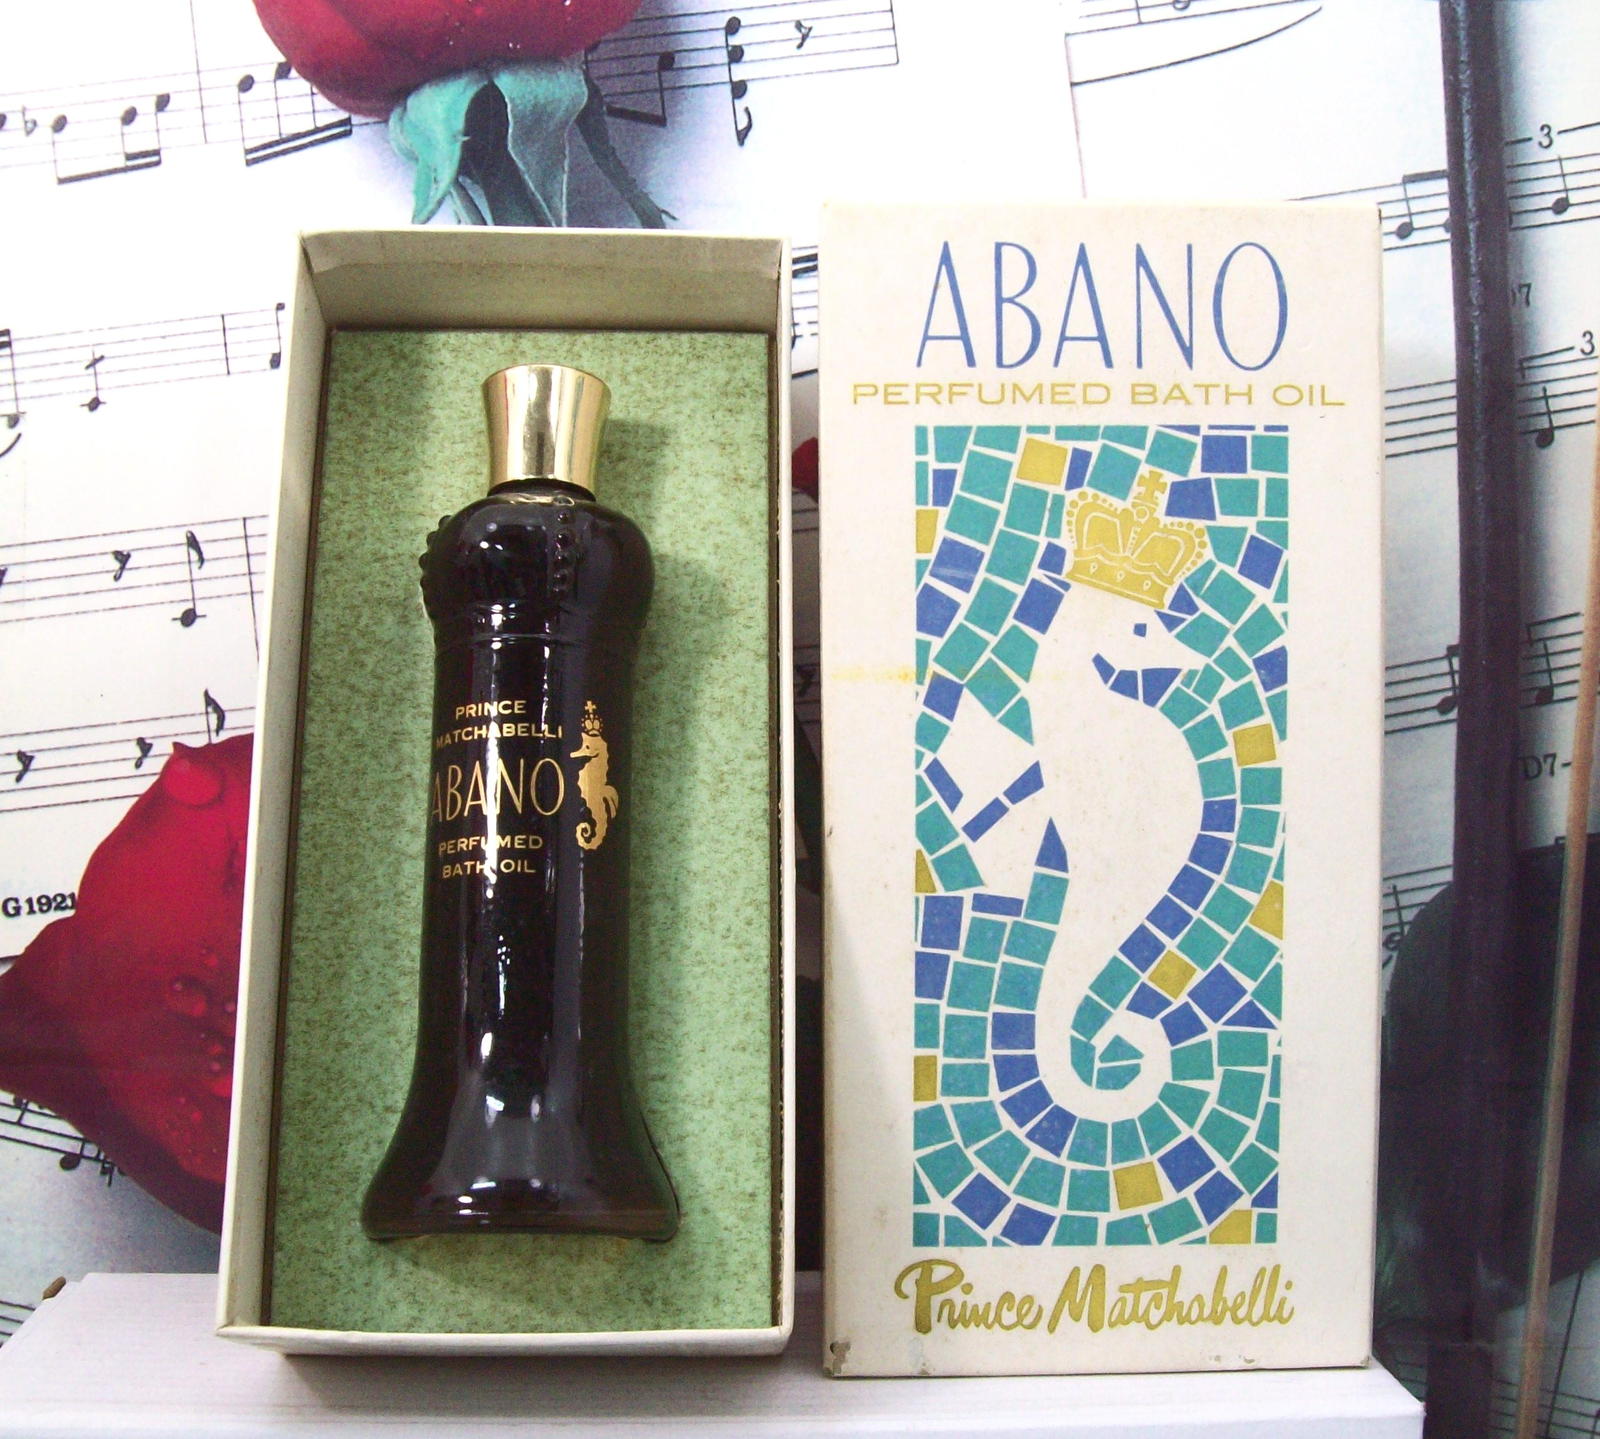 Abano By Prince Matchabelli Perfumed Bath Oil 2.0 FL. OZ. - $799.99